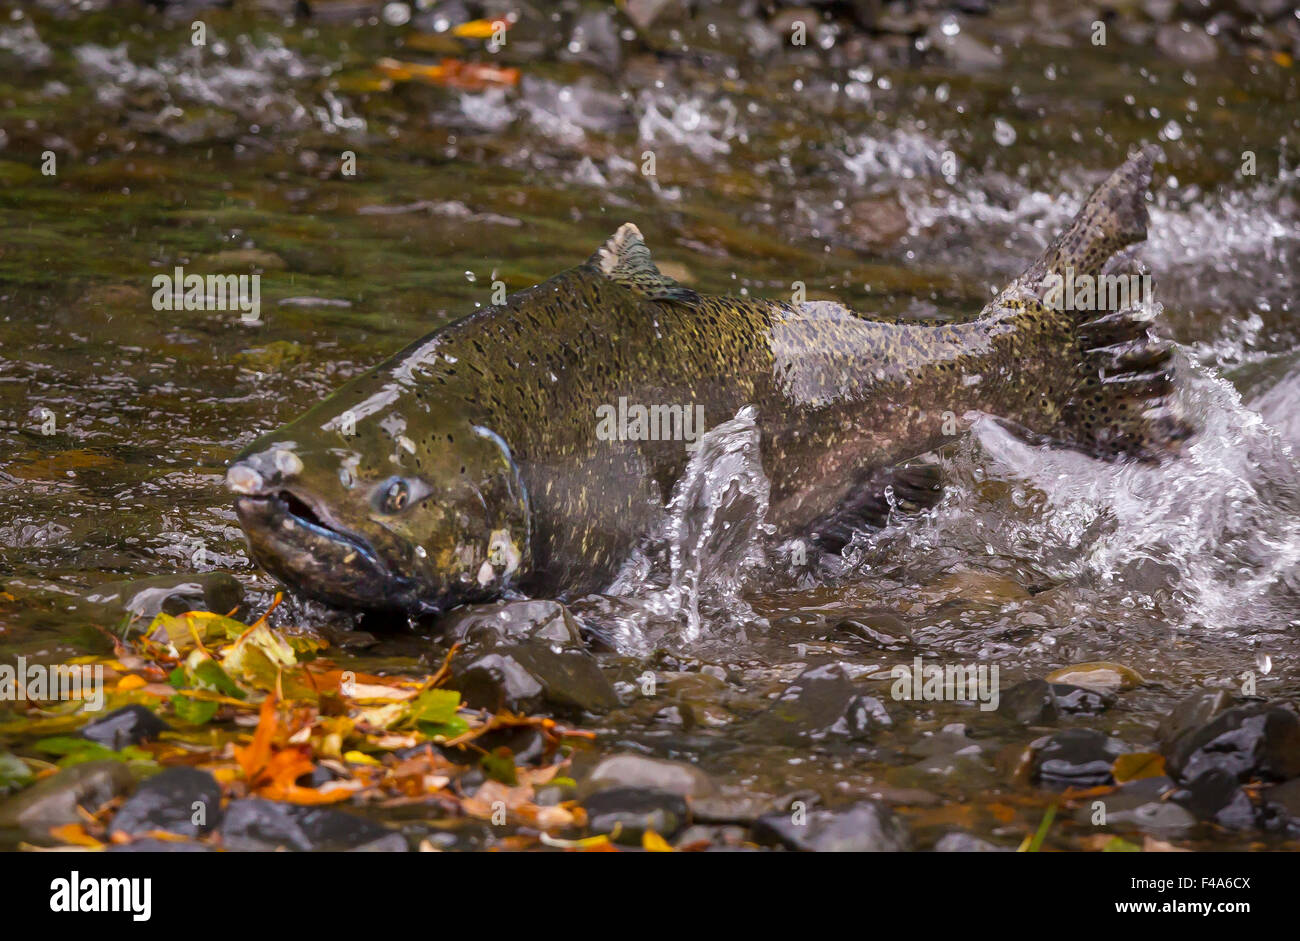 COLUMBIA RIVER OREGON, USA Salmon run on Eagle Creek. Fish